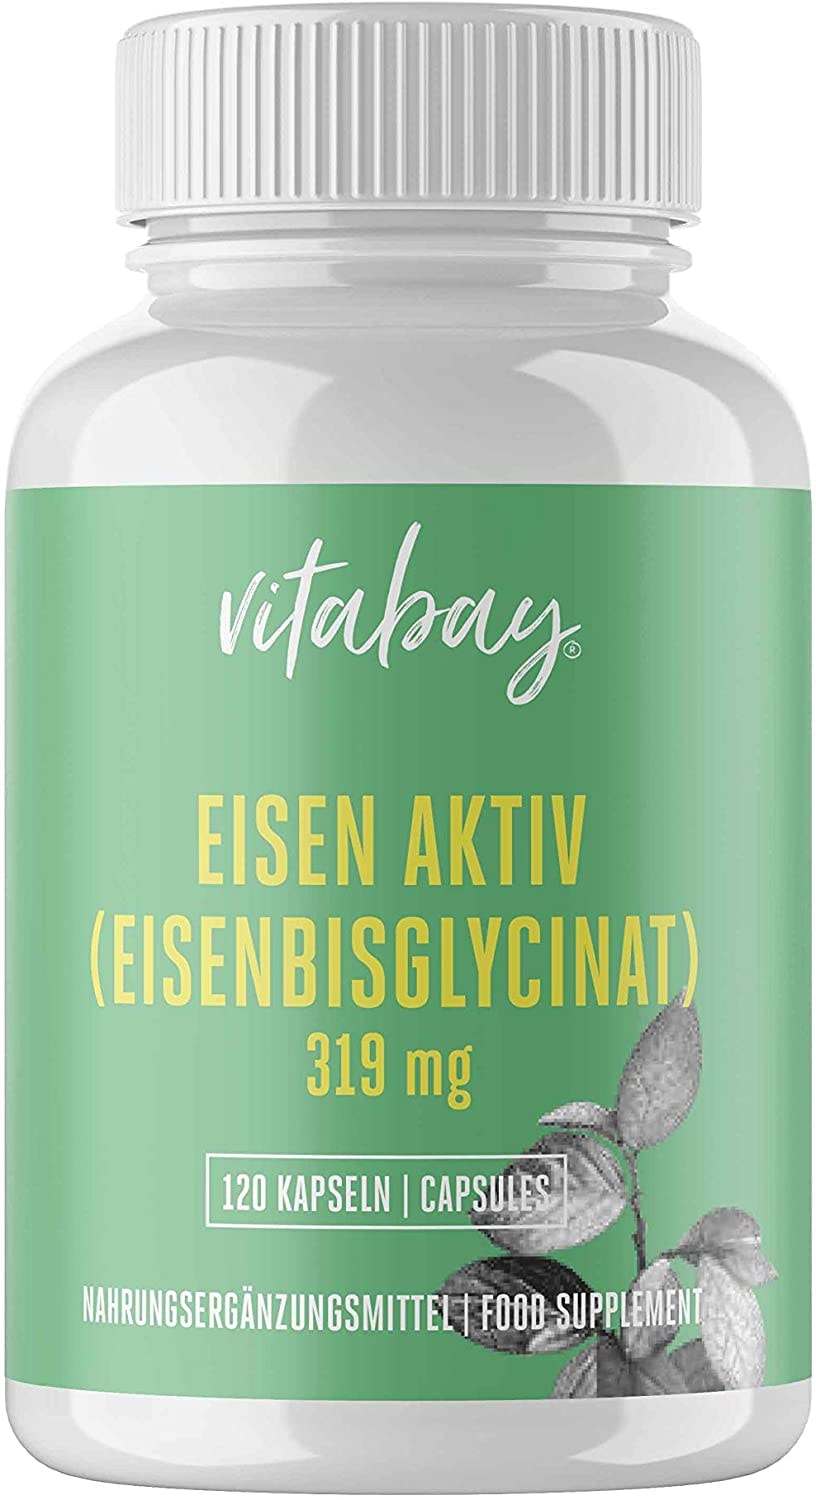 Vitabay Eisen Aktiv aus Eisenbisglycinat 319 mg • 120 vegane Kapseln • Extra hochdosiert & bioverfügbar • 100% Pflanzlich • Hypoallergen • Made in Germany